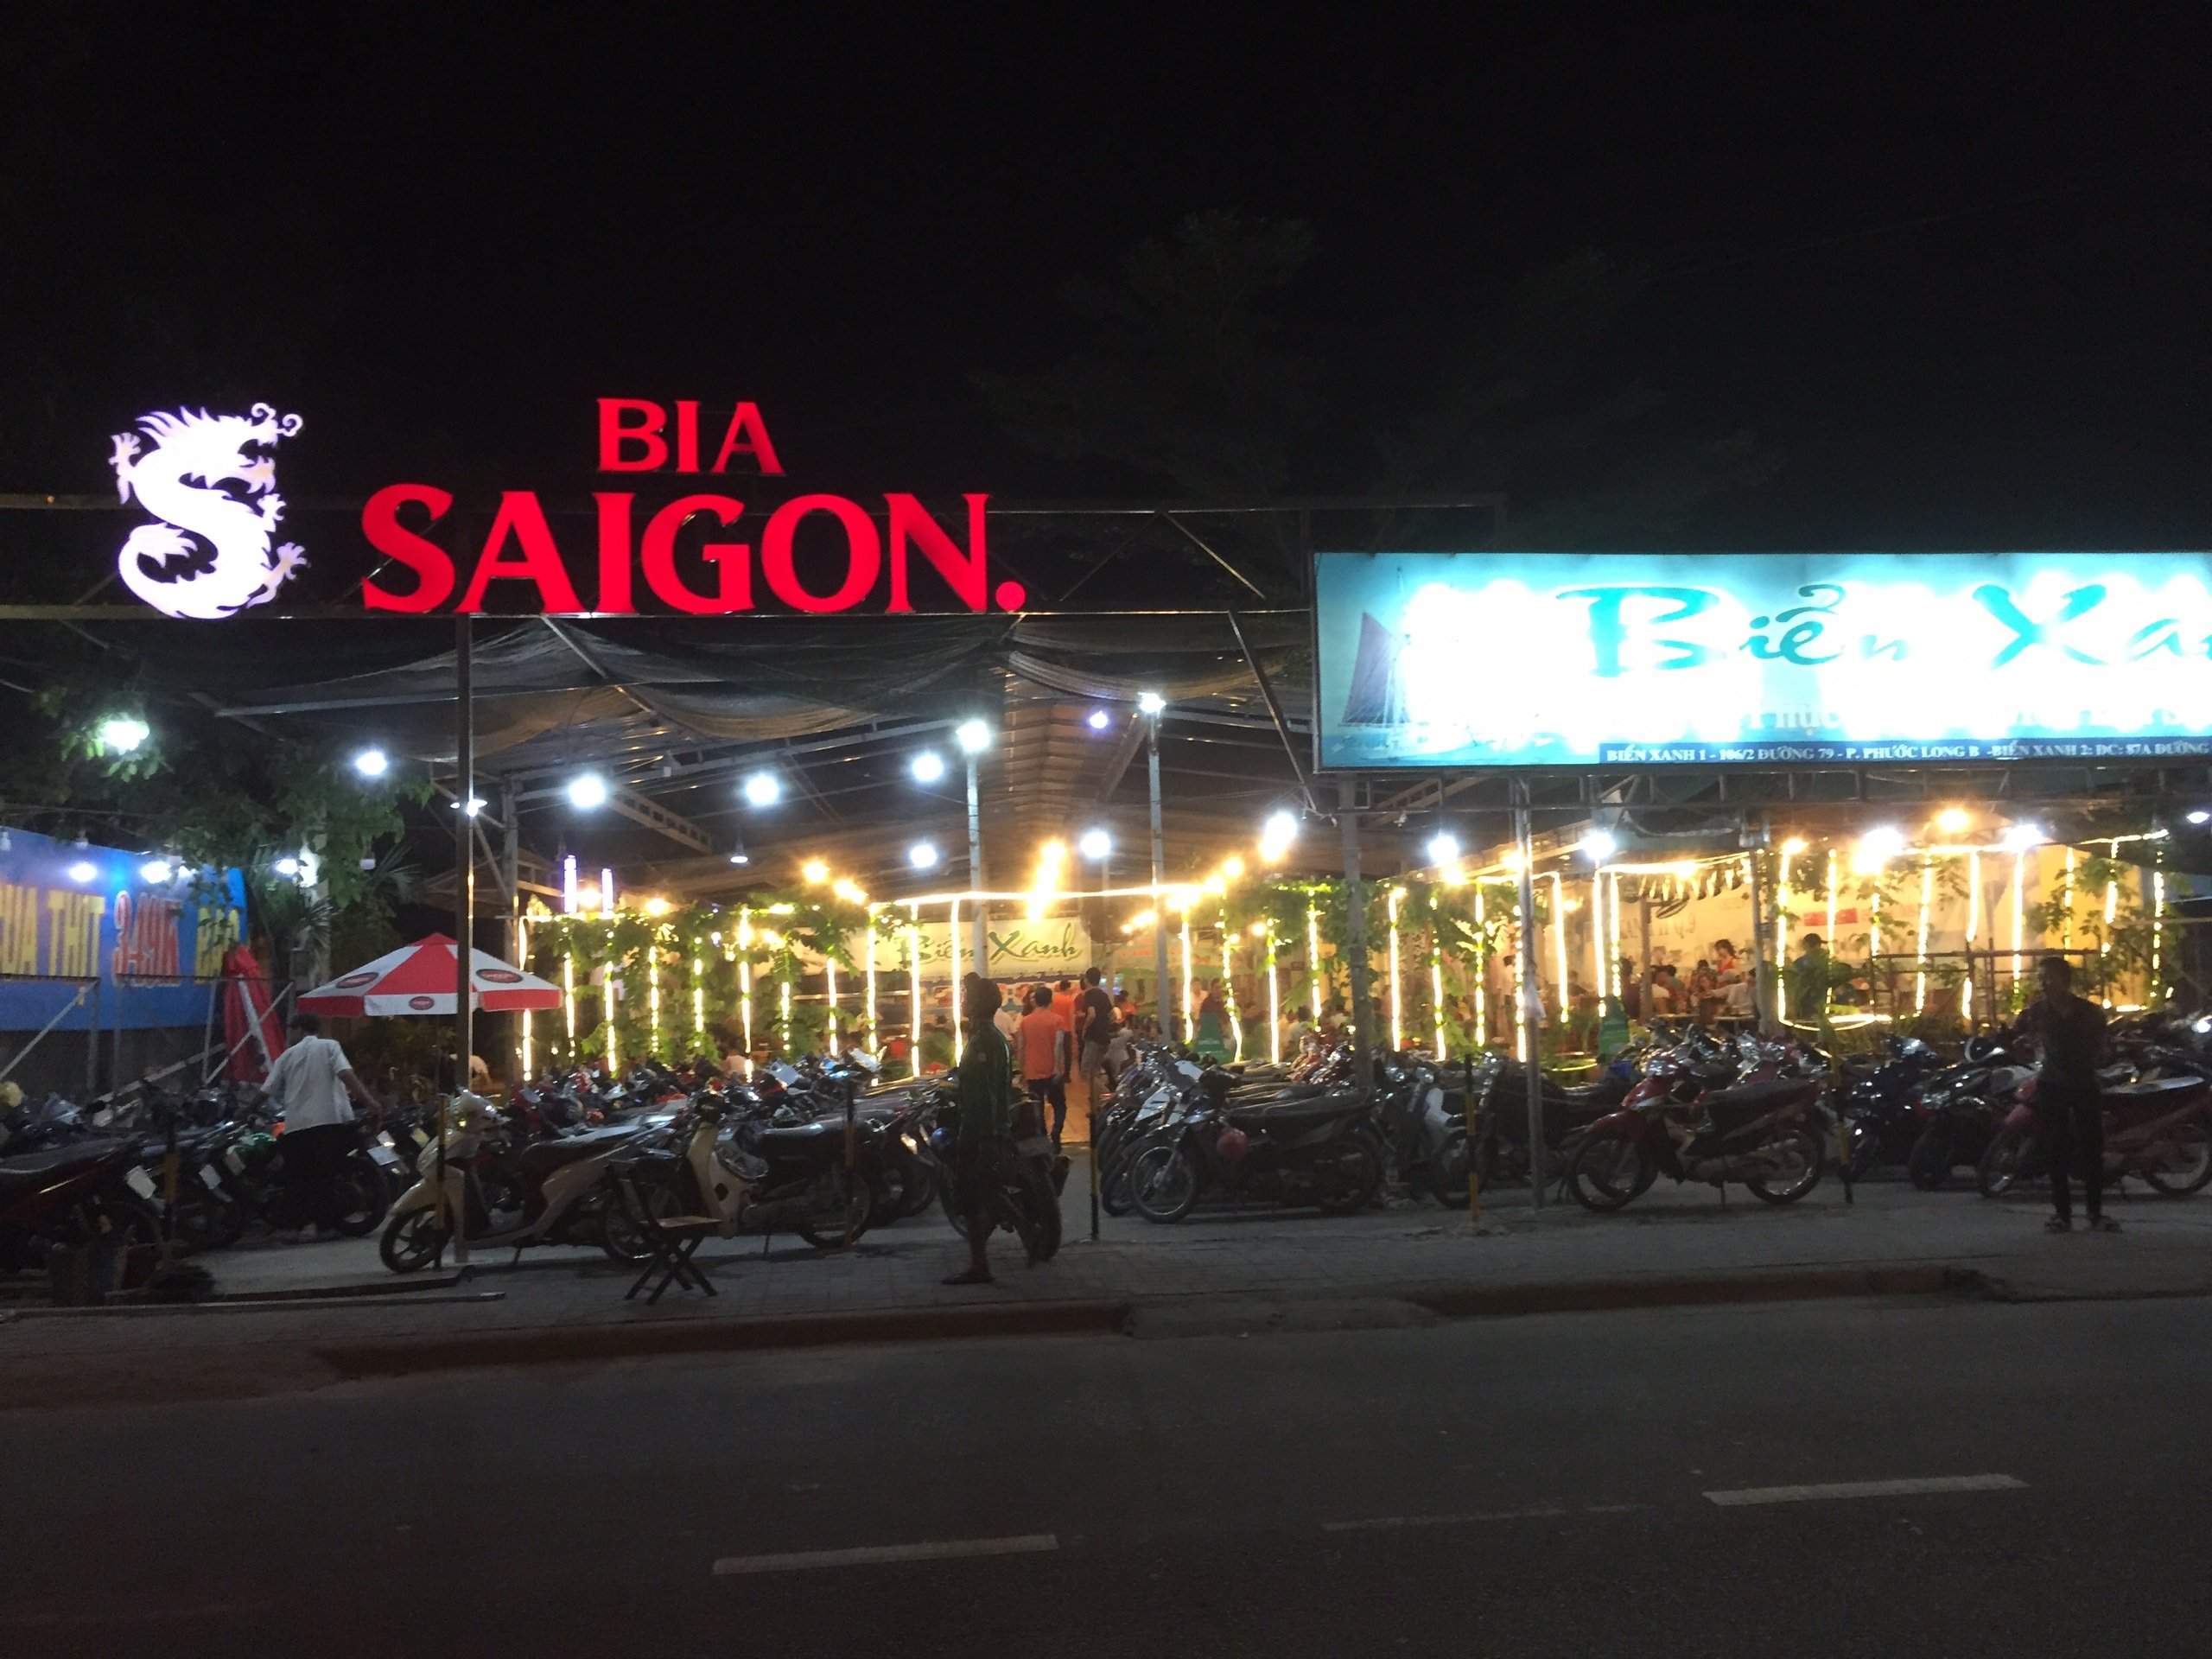 Làm biển hiệu bia Sài Gòn Alu Đèn Led chiếu sáng chất lượng cao